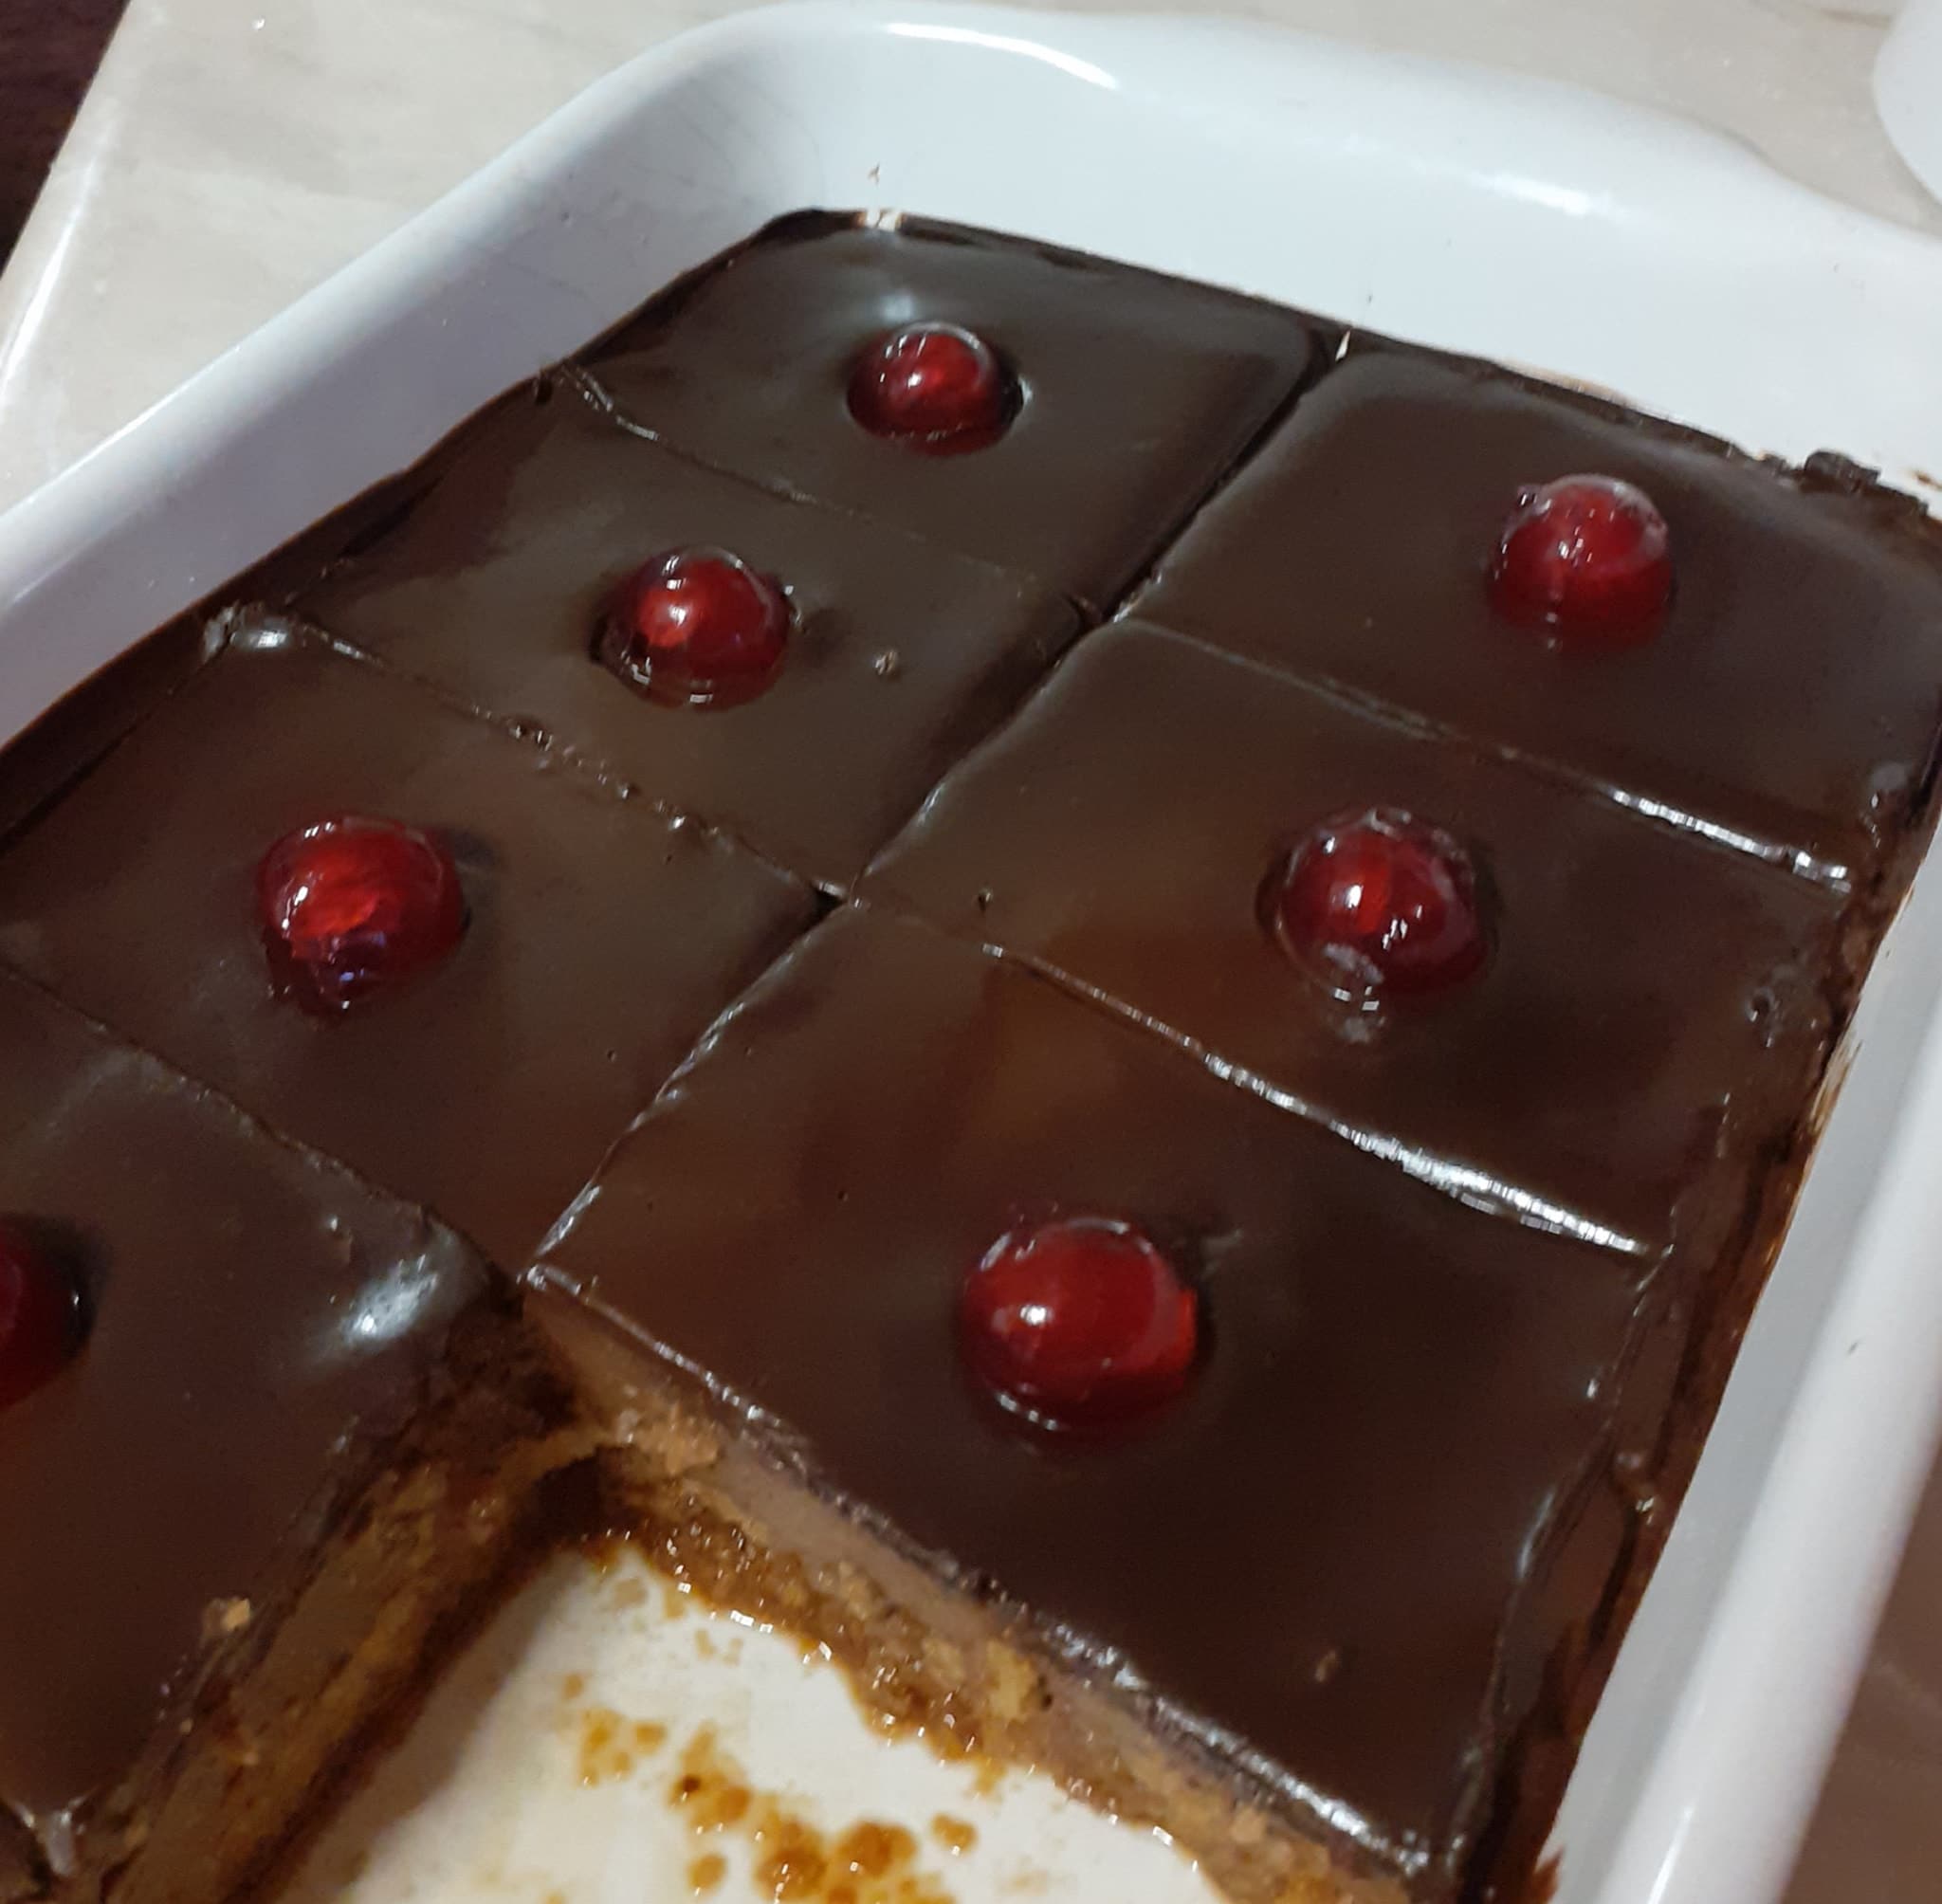 Πολύ ωραία ιδέα για εύκολο γλυκάκι με βασιλόπιτα κέικ που περίσσεψε!